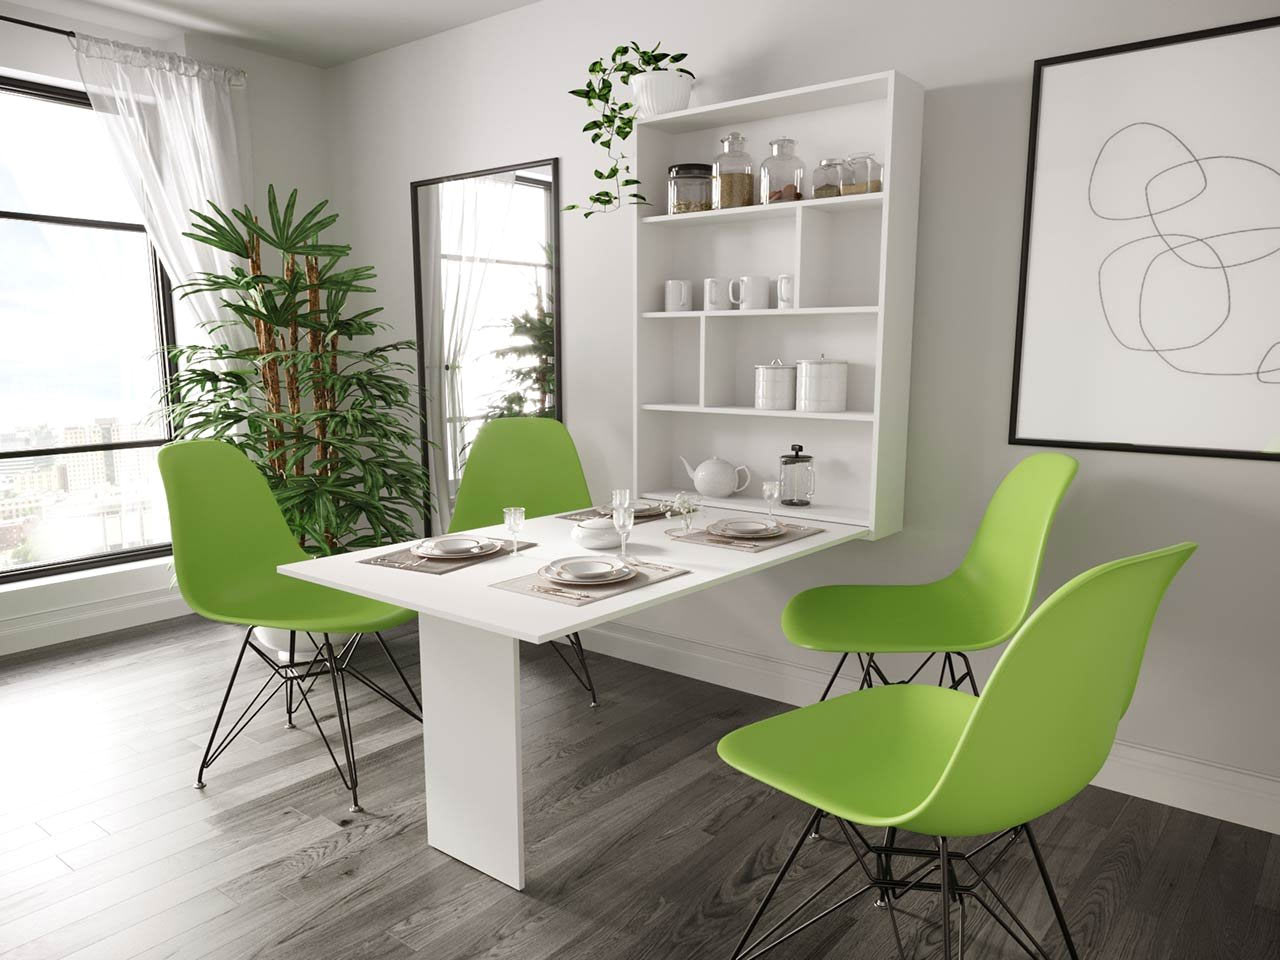 Praktický sklopný stôl šetrí priestor v menších bytoch